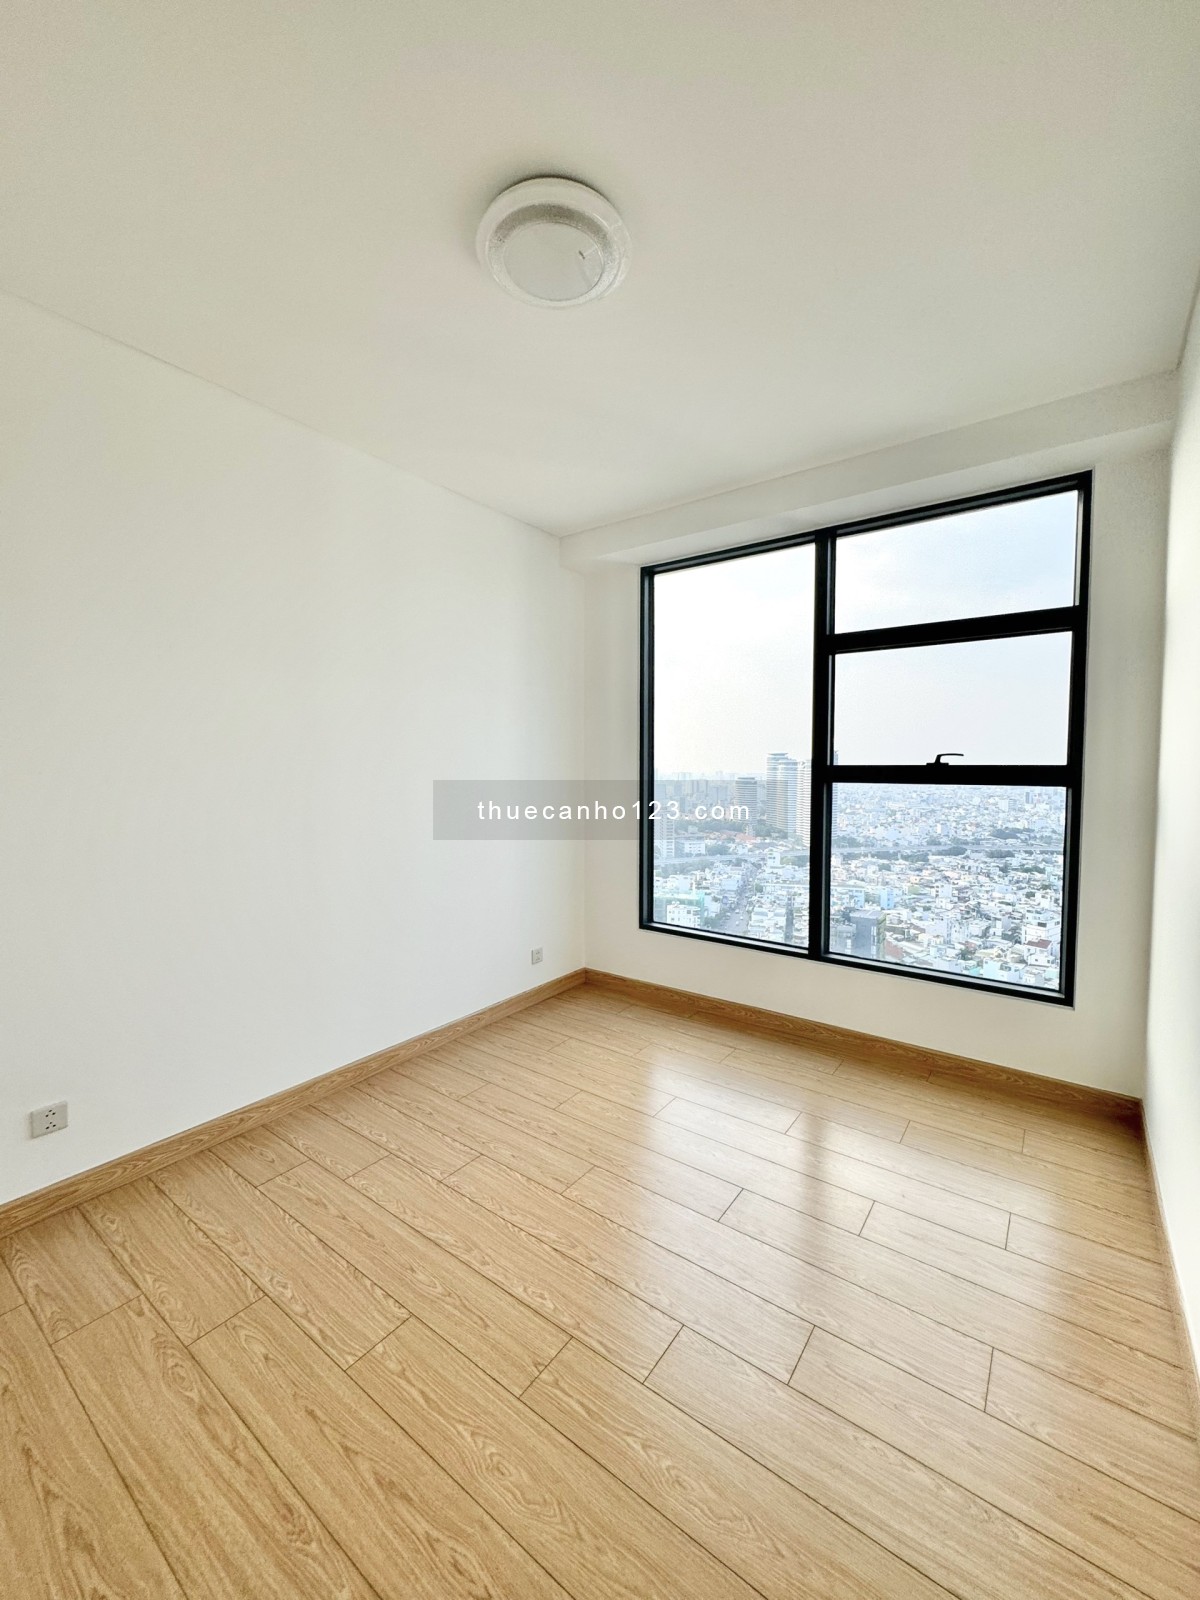 Sunwah Pearl, Cho thuê căn hộ 2PN+1 giá cực sốc, Chỉ 24tr, NTCB, 103m2, View ngoài k chắn